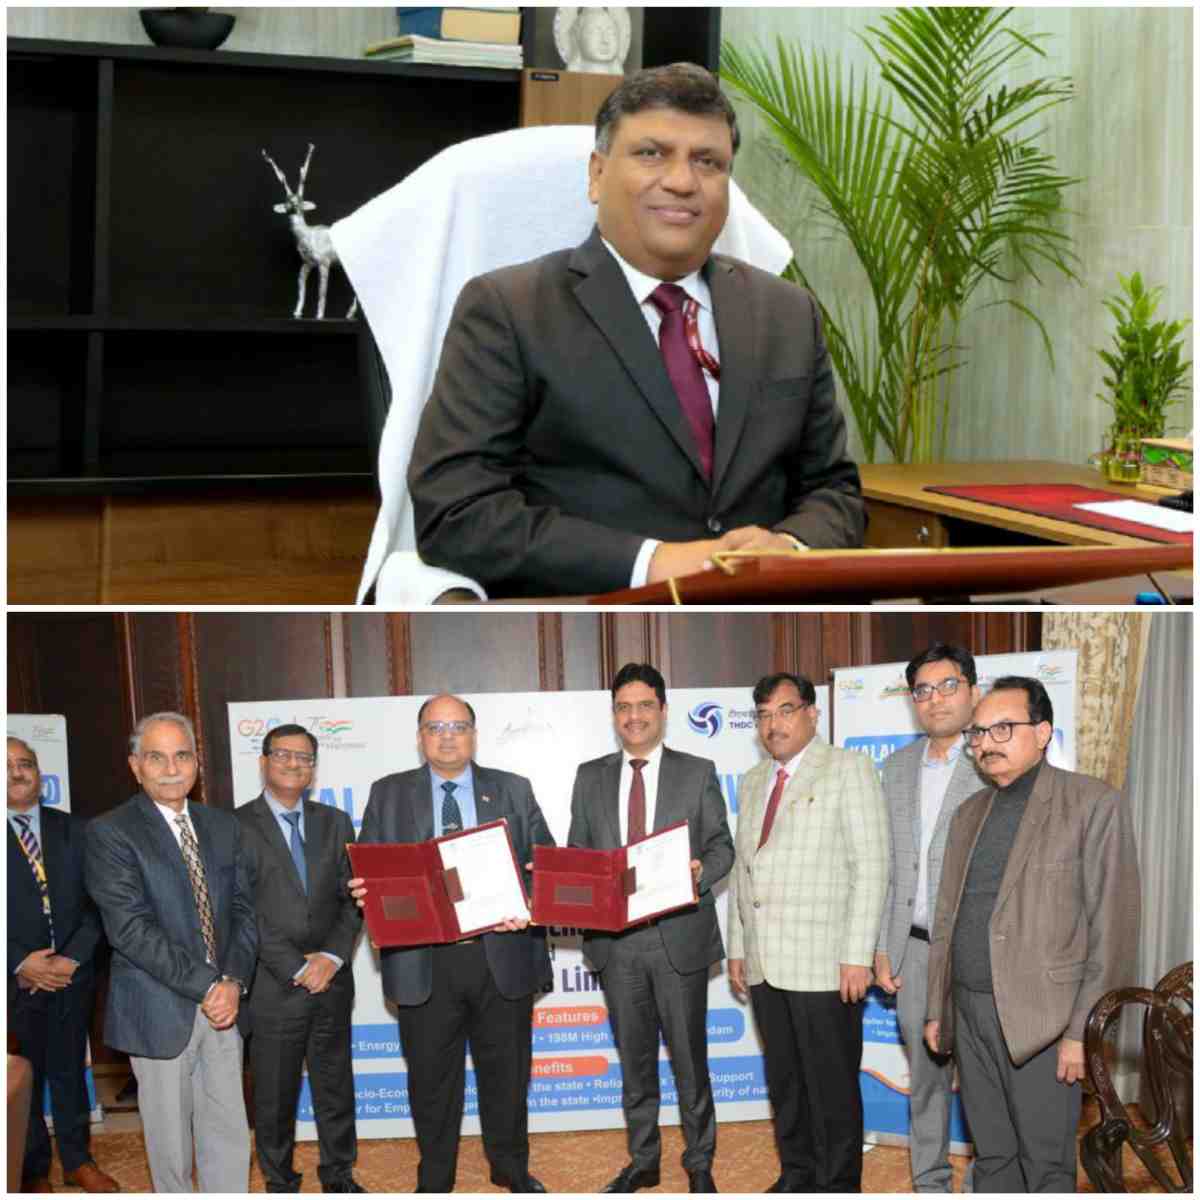 टीएचडीसीआईएल ने 1200 मेगावाट कलाई एचईपी के कार्यान्वयन के लिए अरुणाचल सरकार के साथ समझौता ज्ञापन पर हस्ताक्षर किए